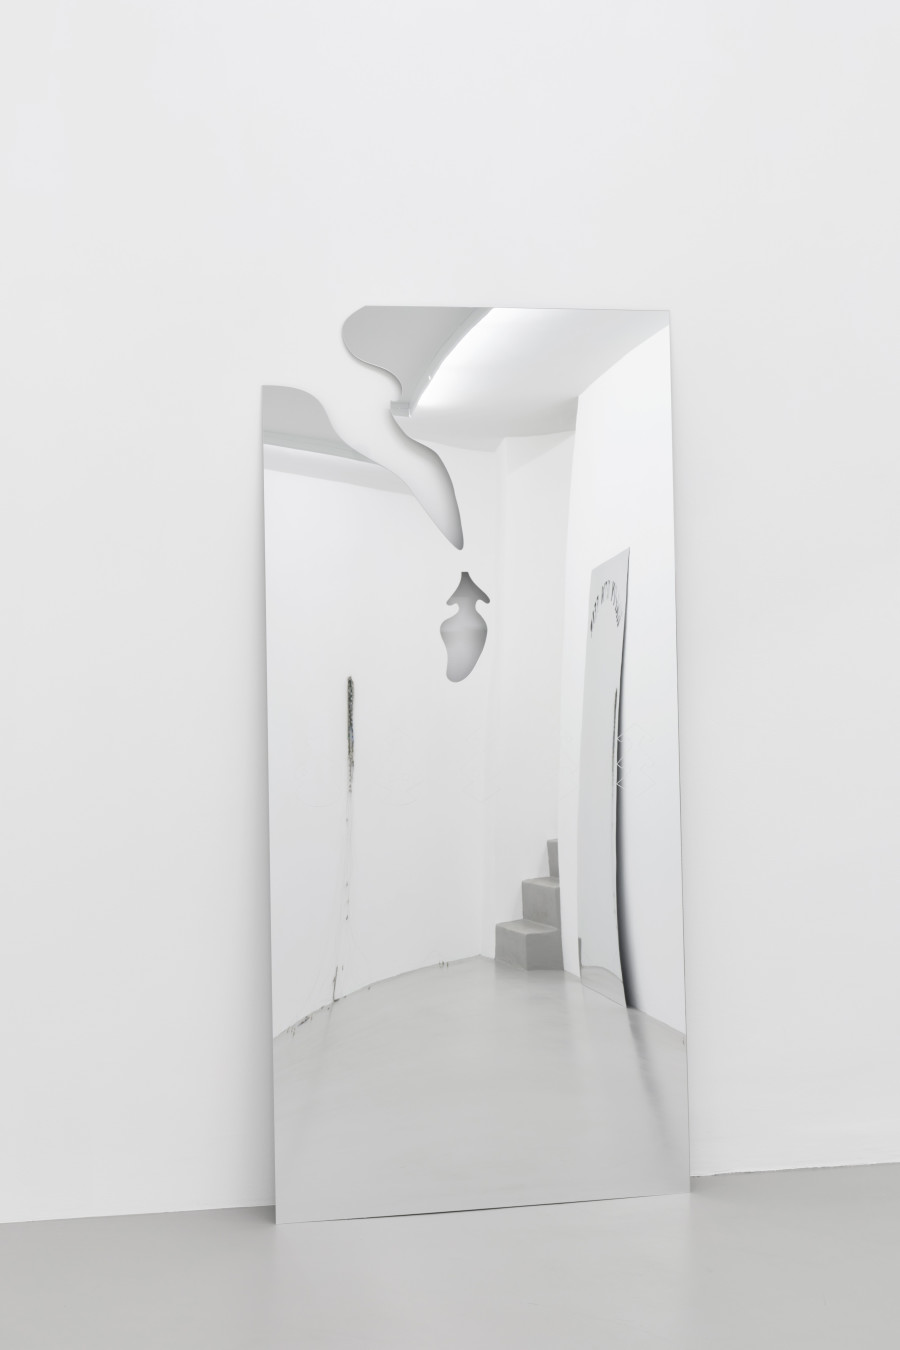 Untitled, 2022, Plexiglass, 179 x 85 x 17 cm